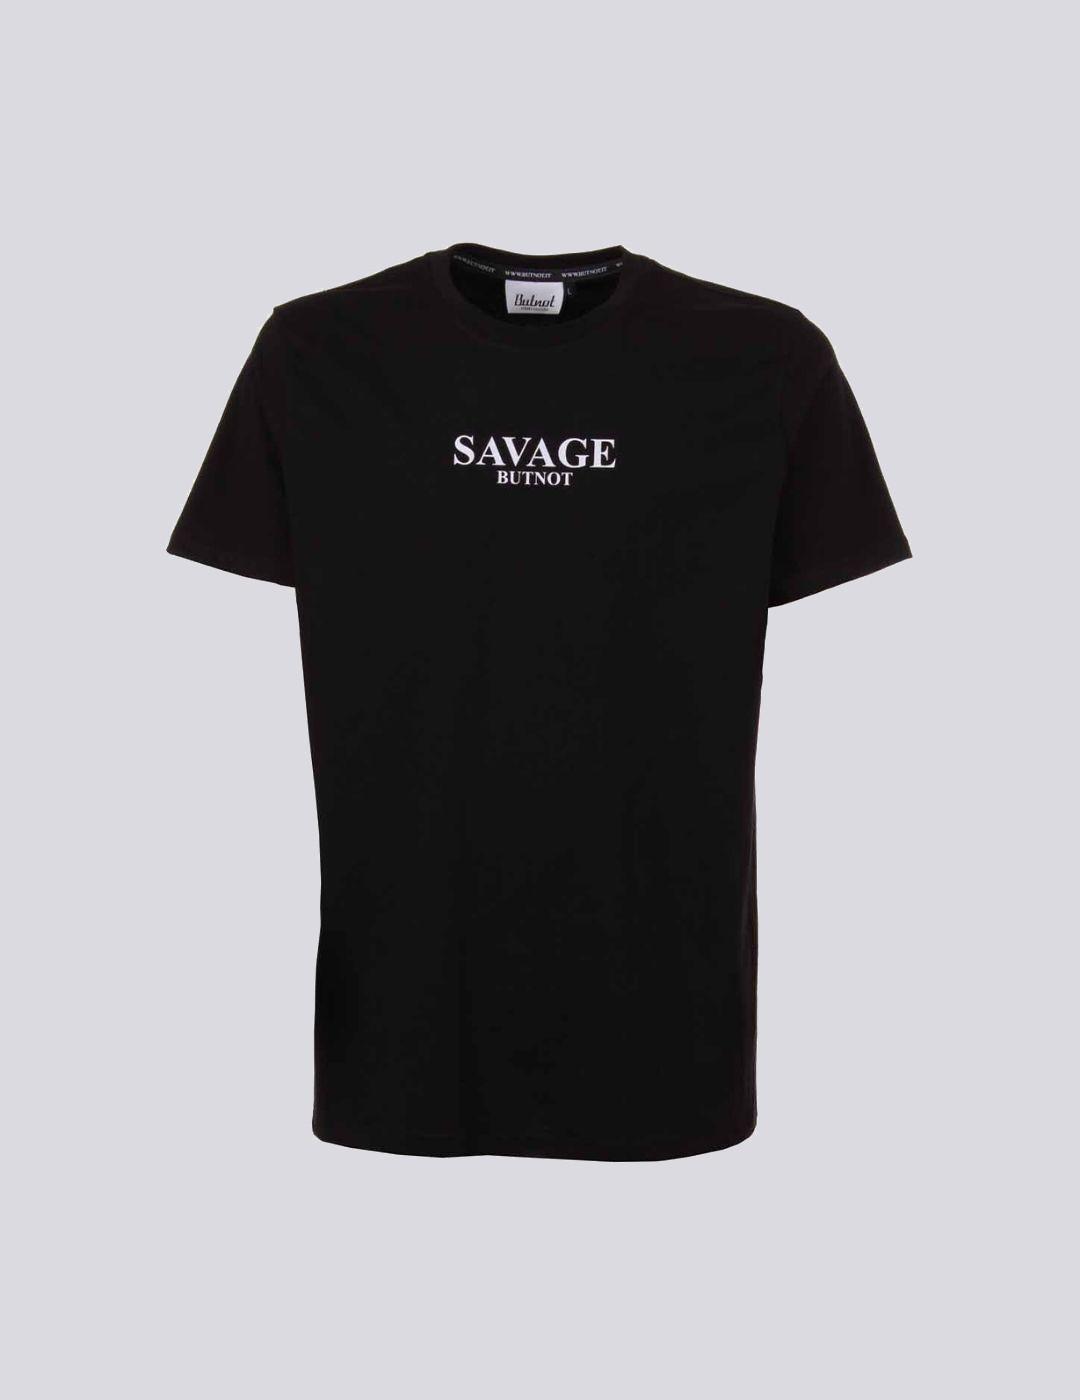 Camiseta Butnot Savage negra para